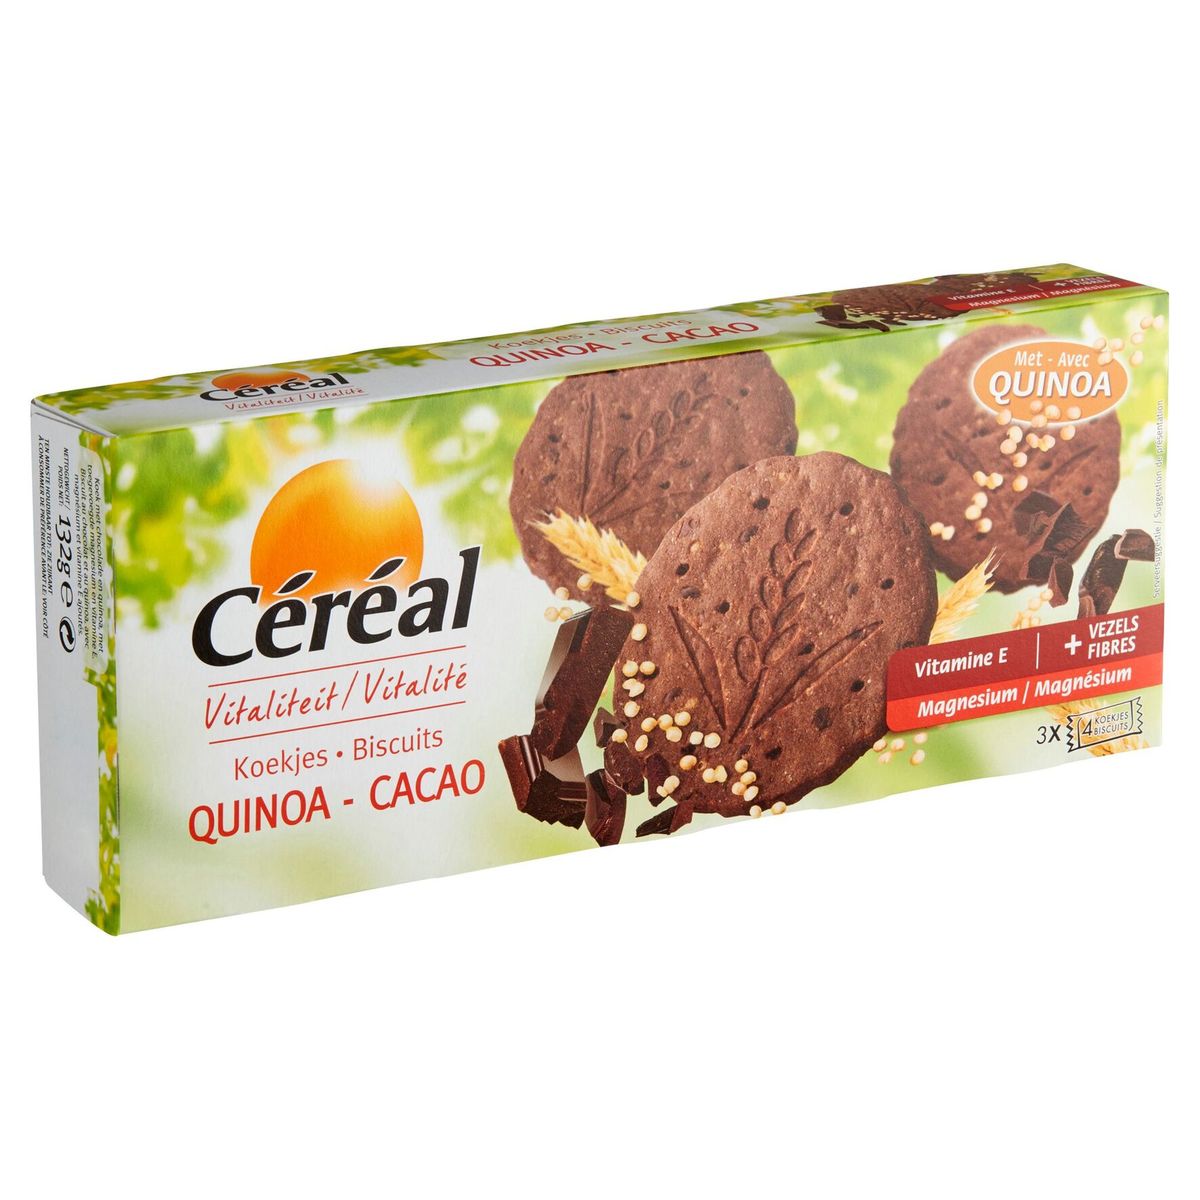 Céréal Vitalité Biscuits Quinoa - Cacao 3 x 4 Biscuits 132 g